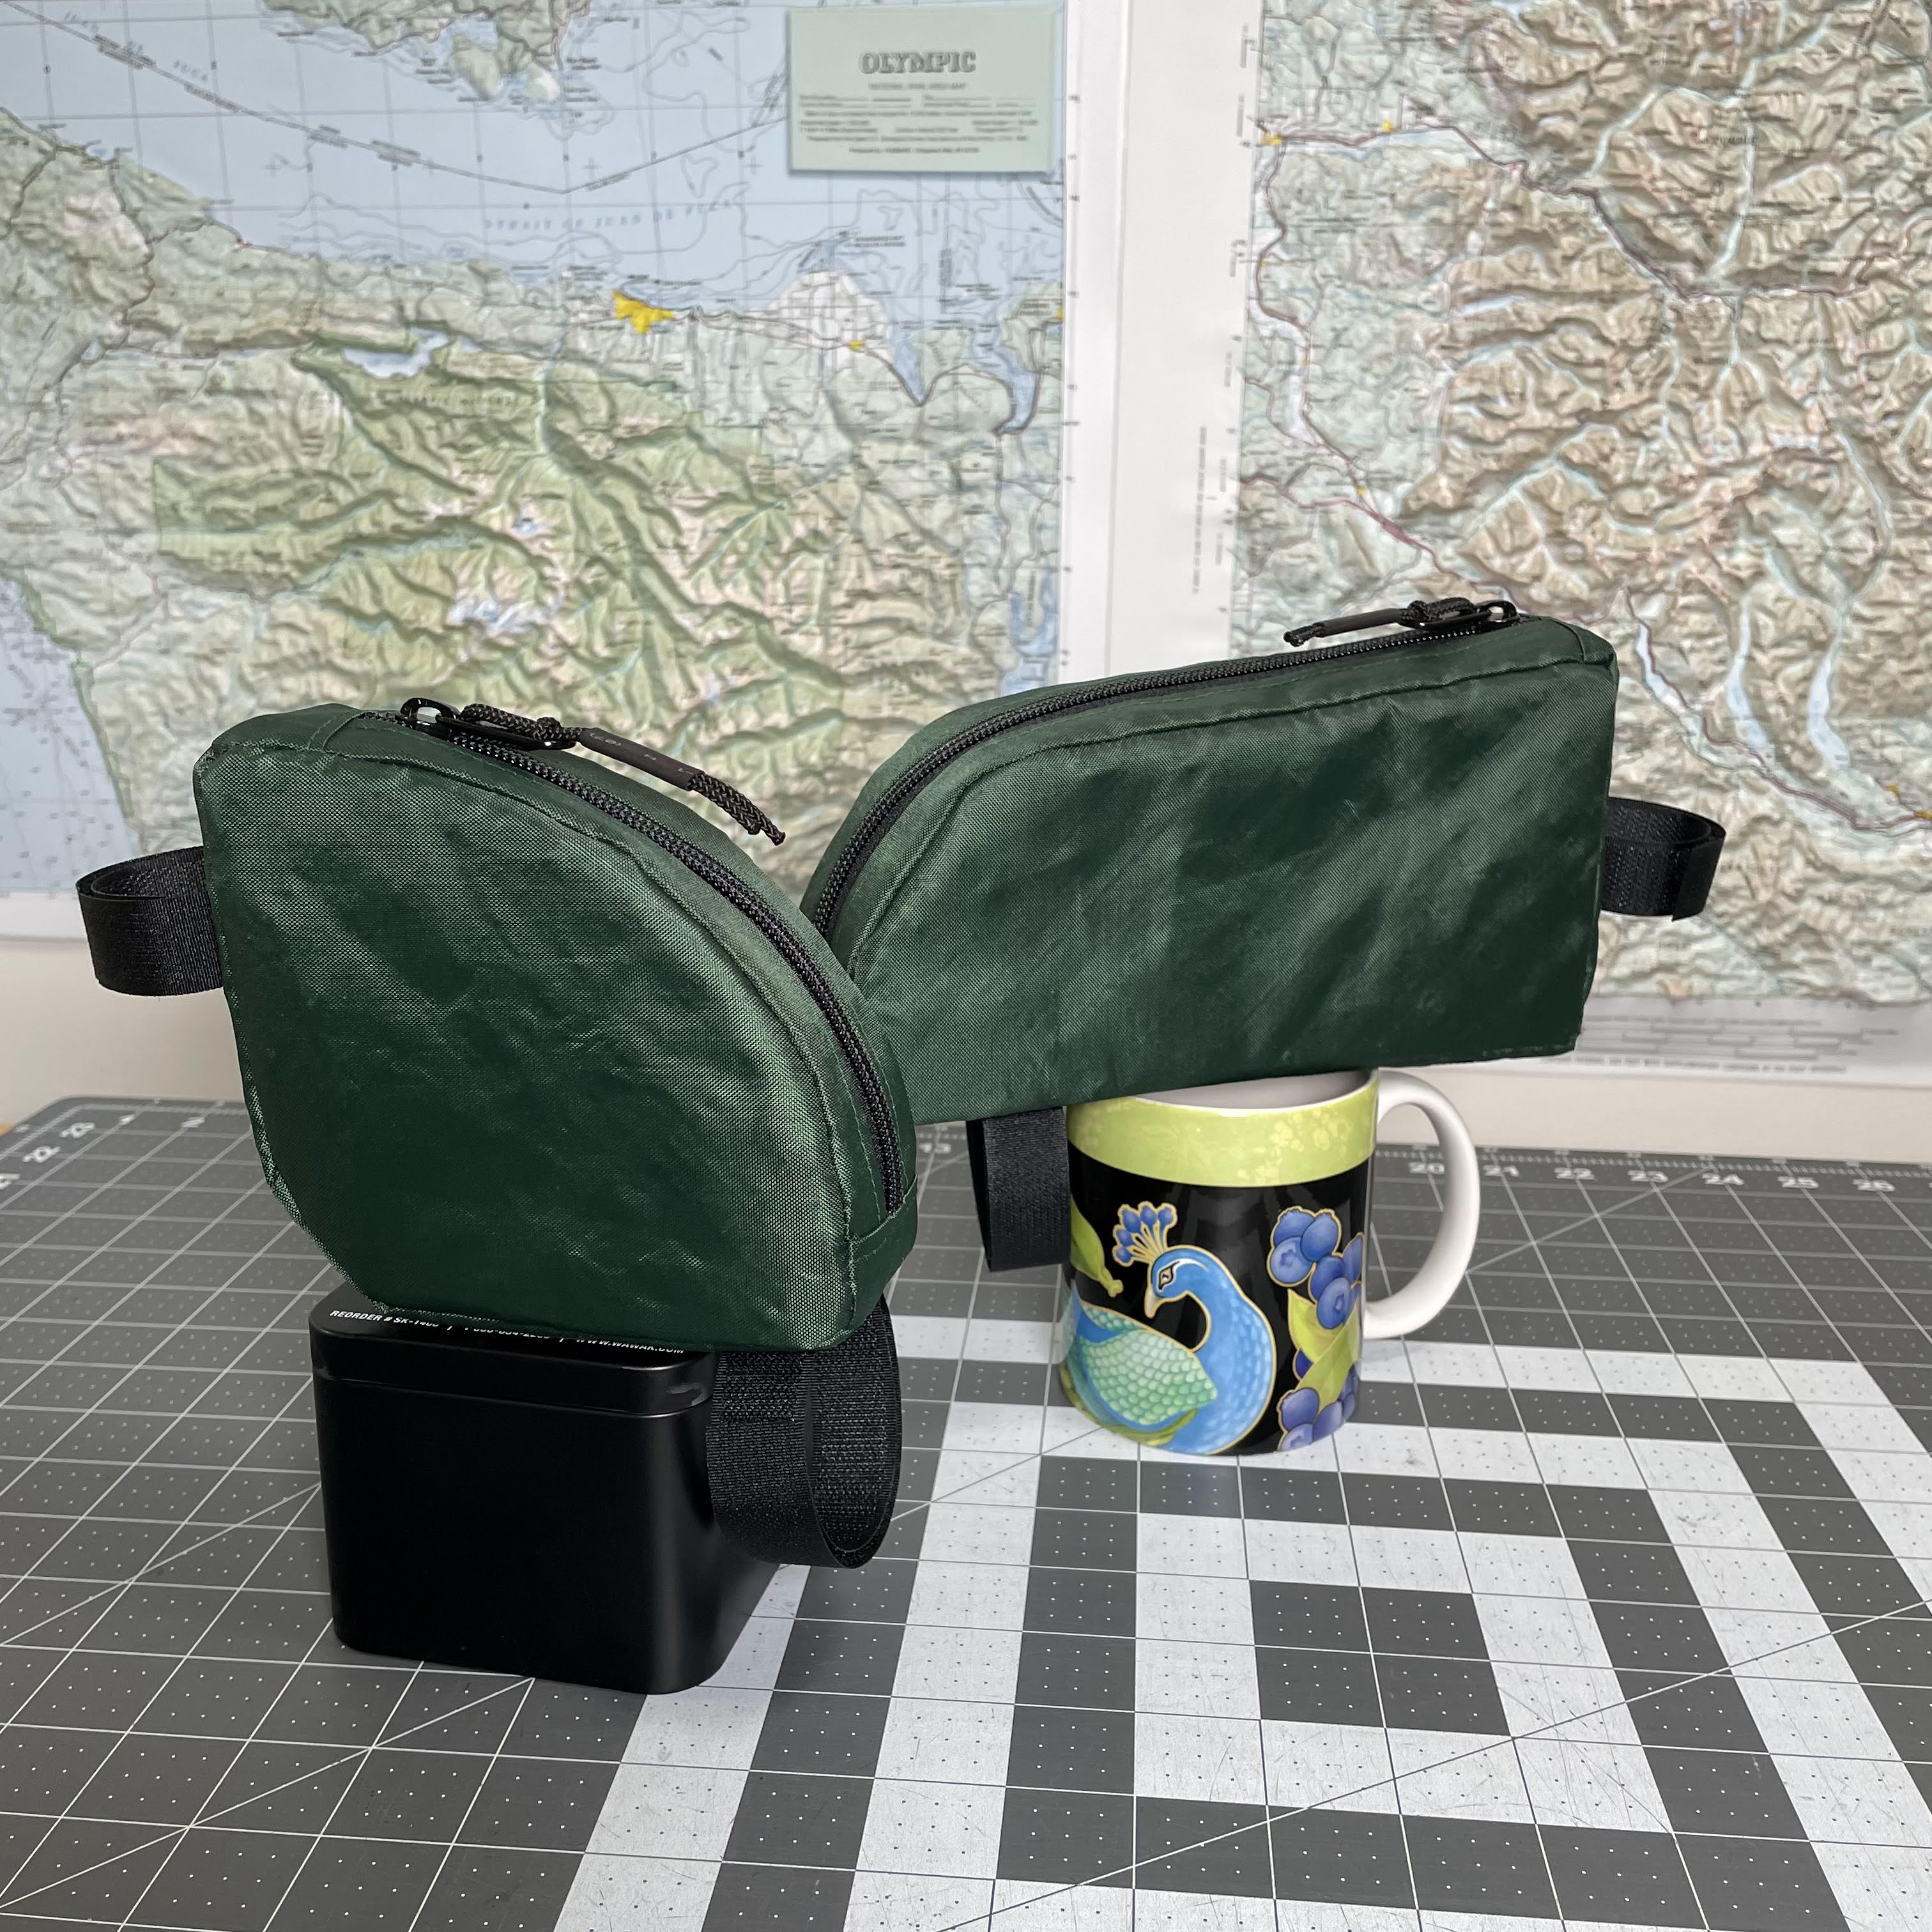 MYOG_bikepacking bags